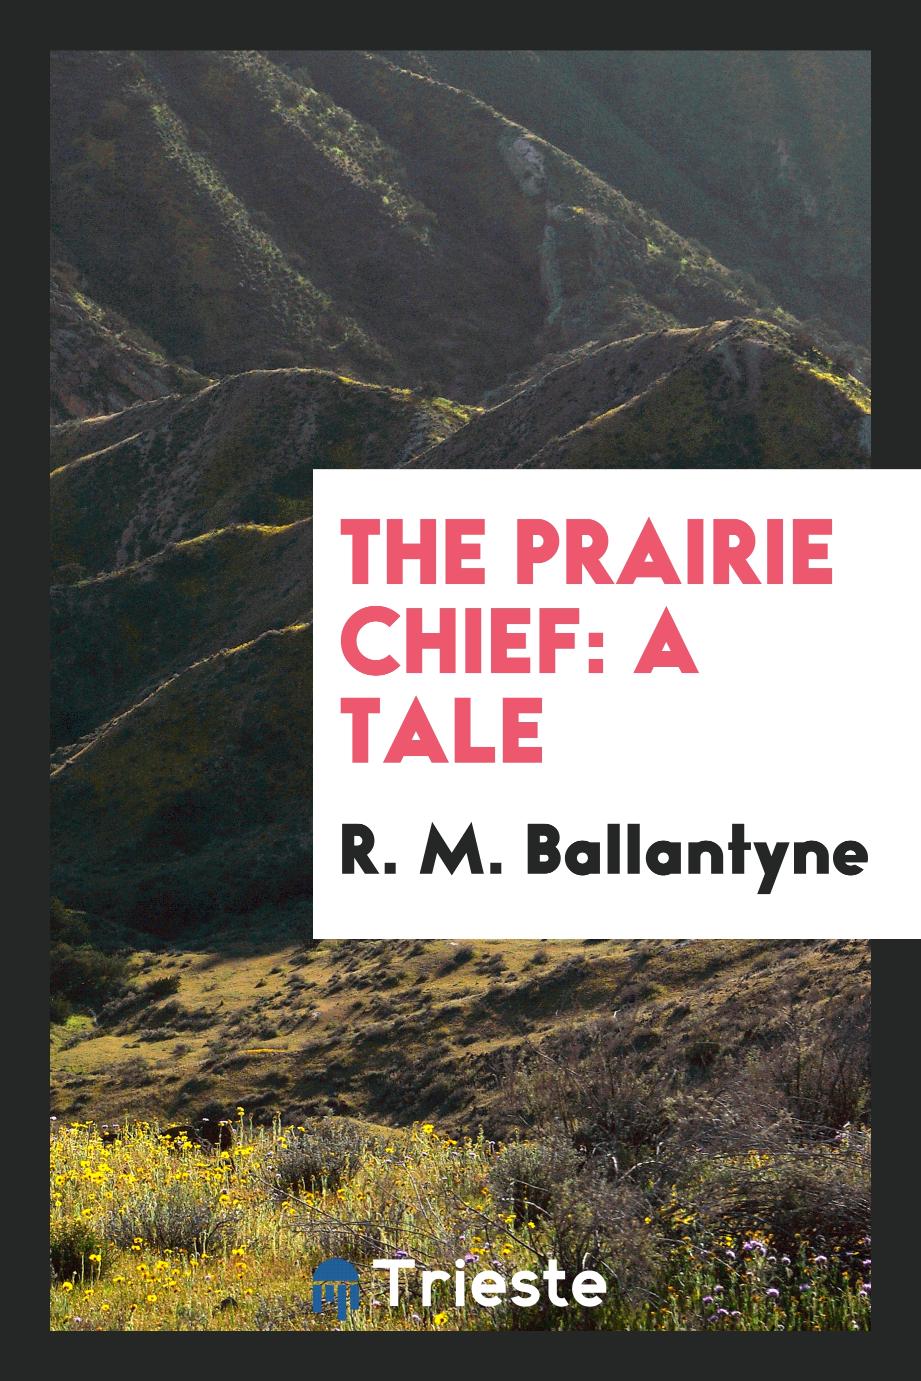 The prairie chief: a tale